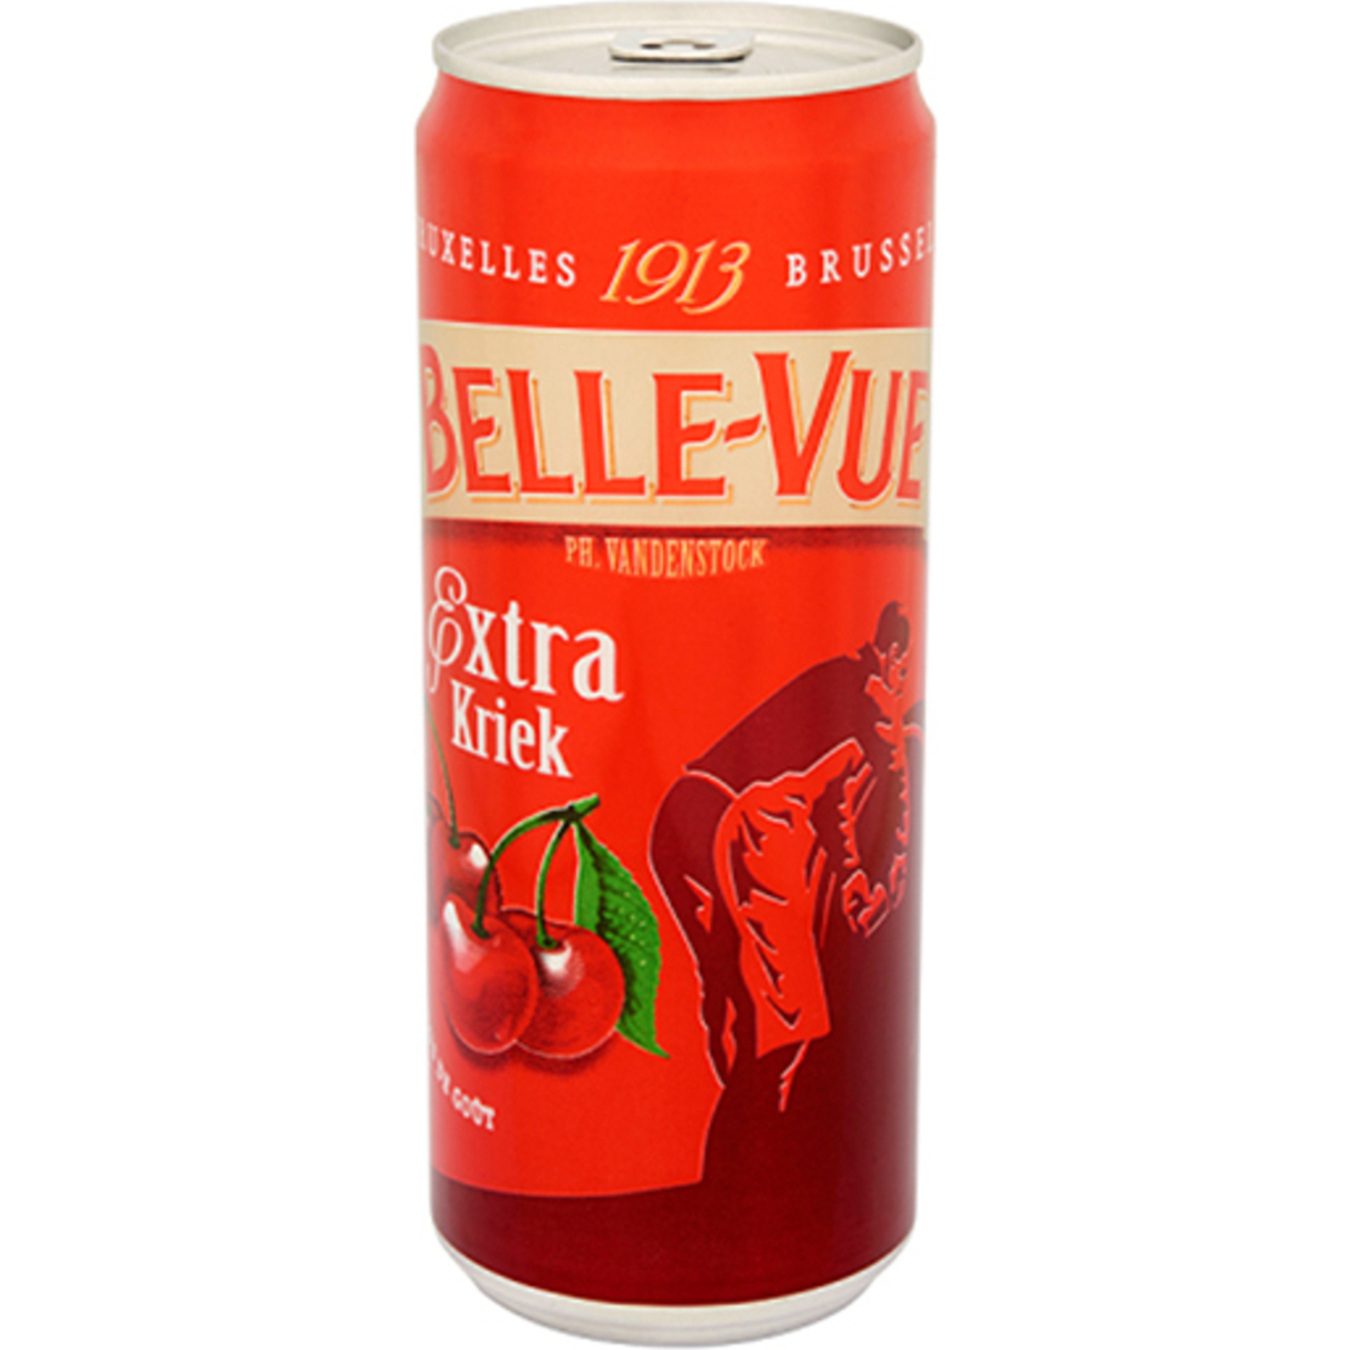 Belle-Vue Extra Kriek semi-dark special beer 4,1% 0,33l can